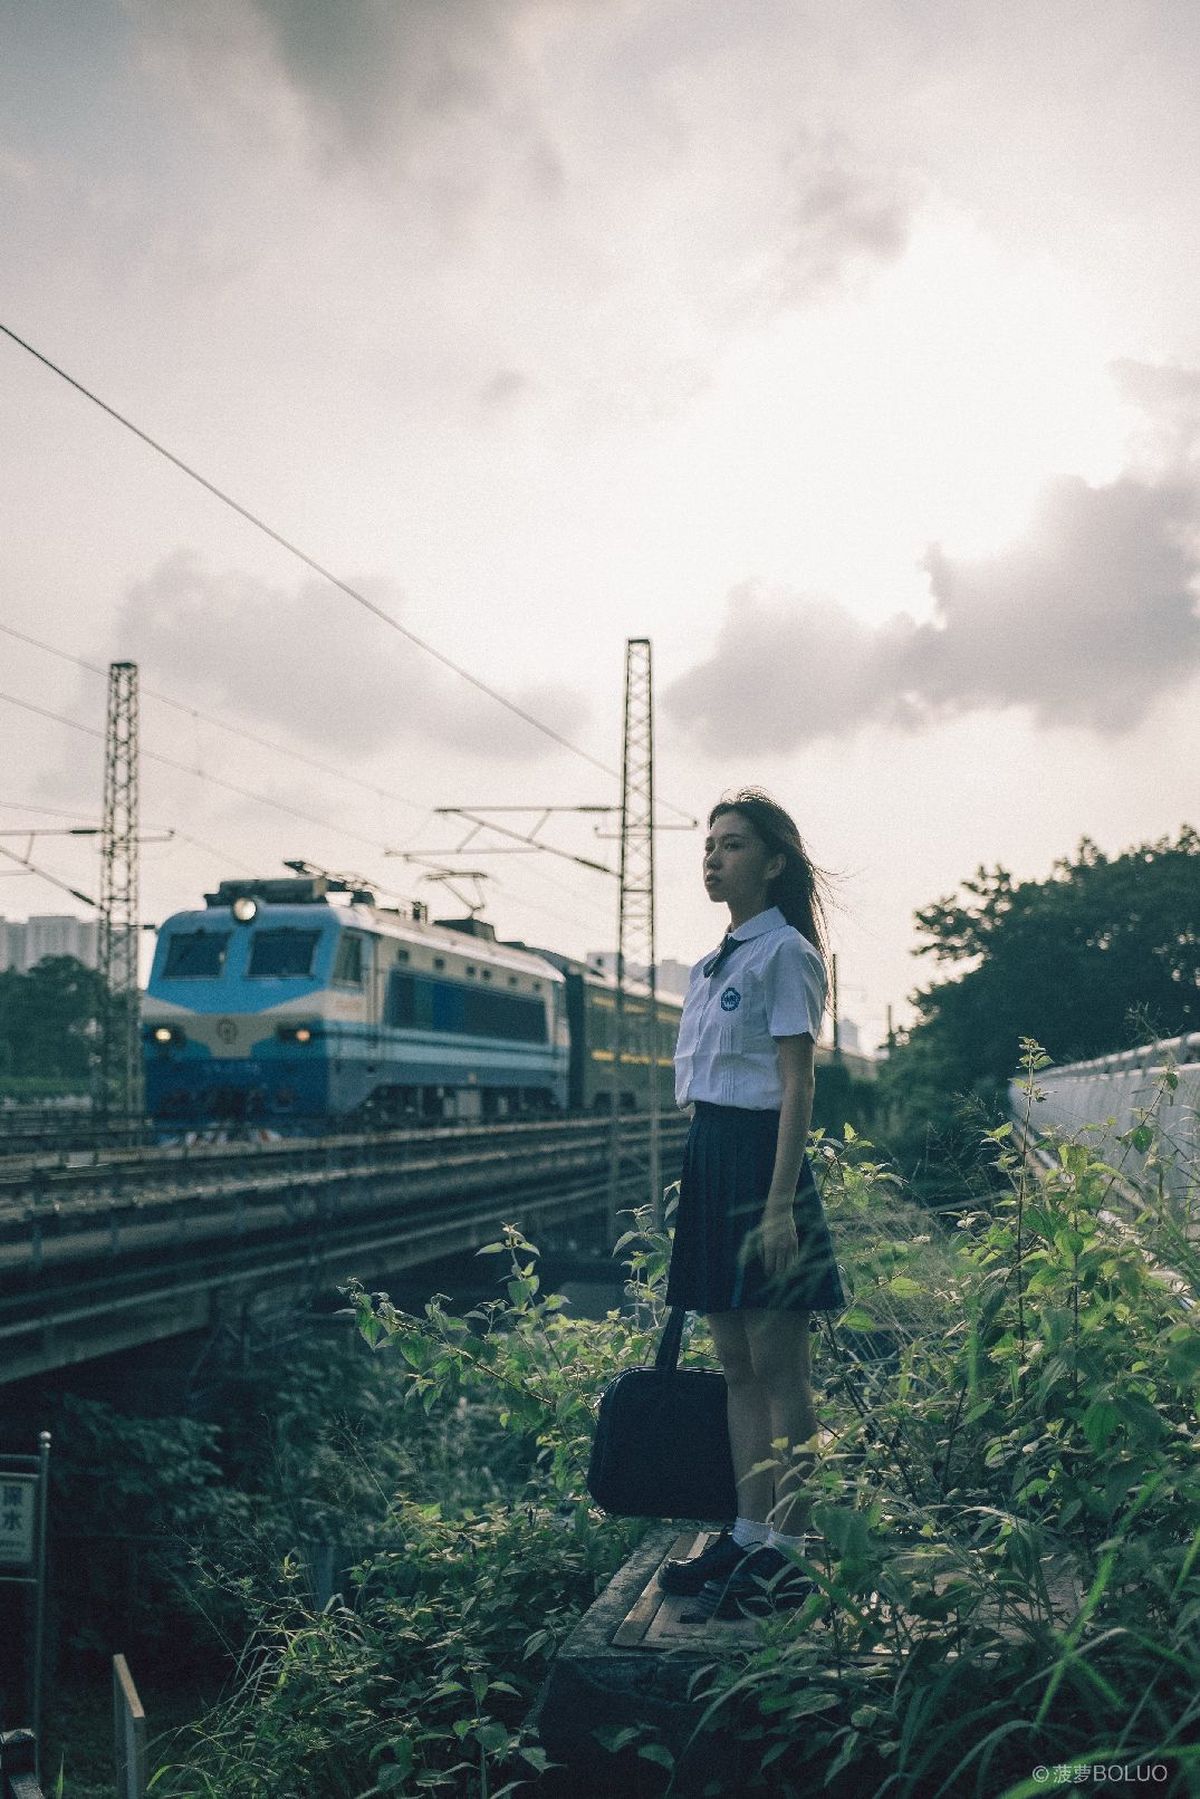 一位年轻女子带着行李站在火车轨道上 火车经过。